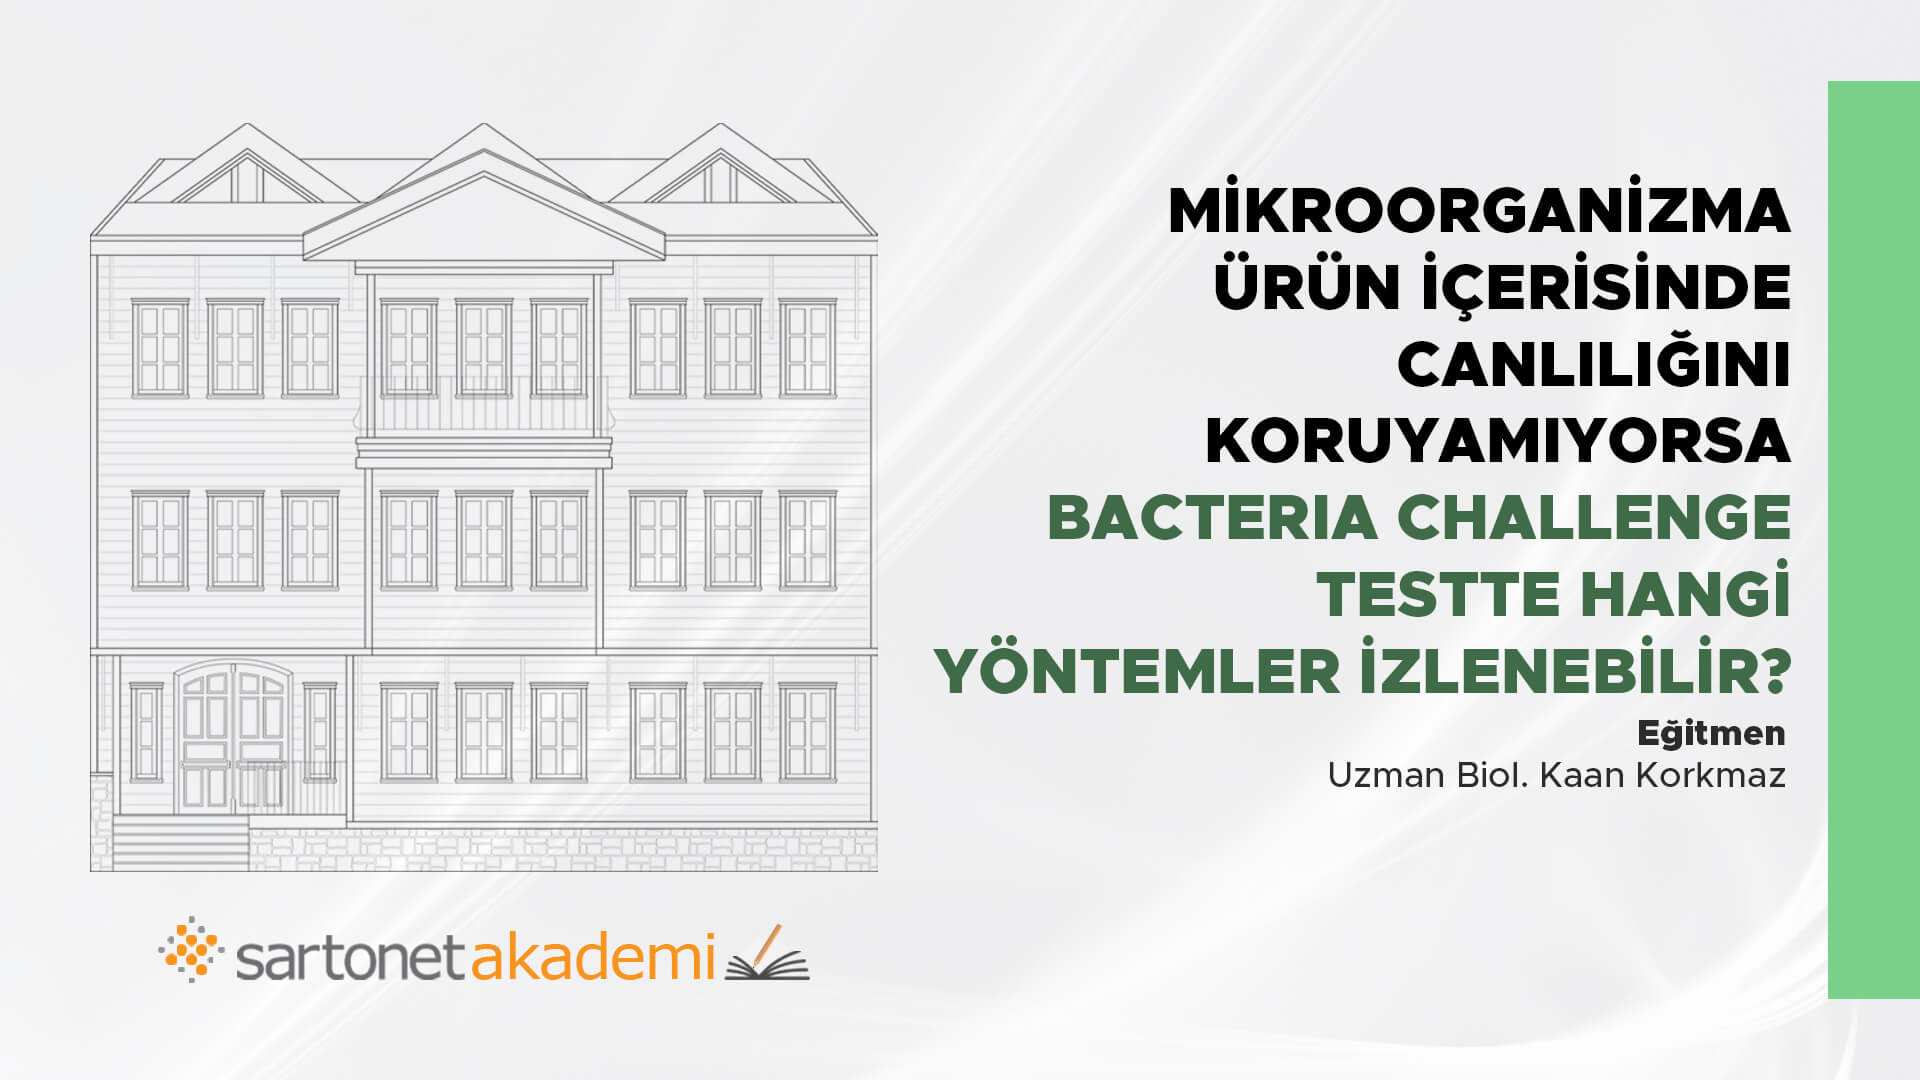 Mikroorganizma ürün içerisinde canlılığını koruyamıyorsa  Bacteria Challenge Testte hangi yöntemler izlenebilir?